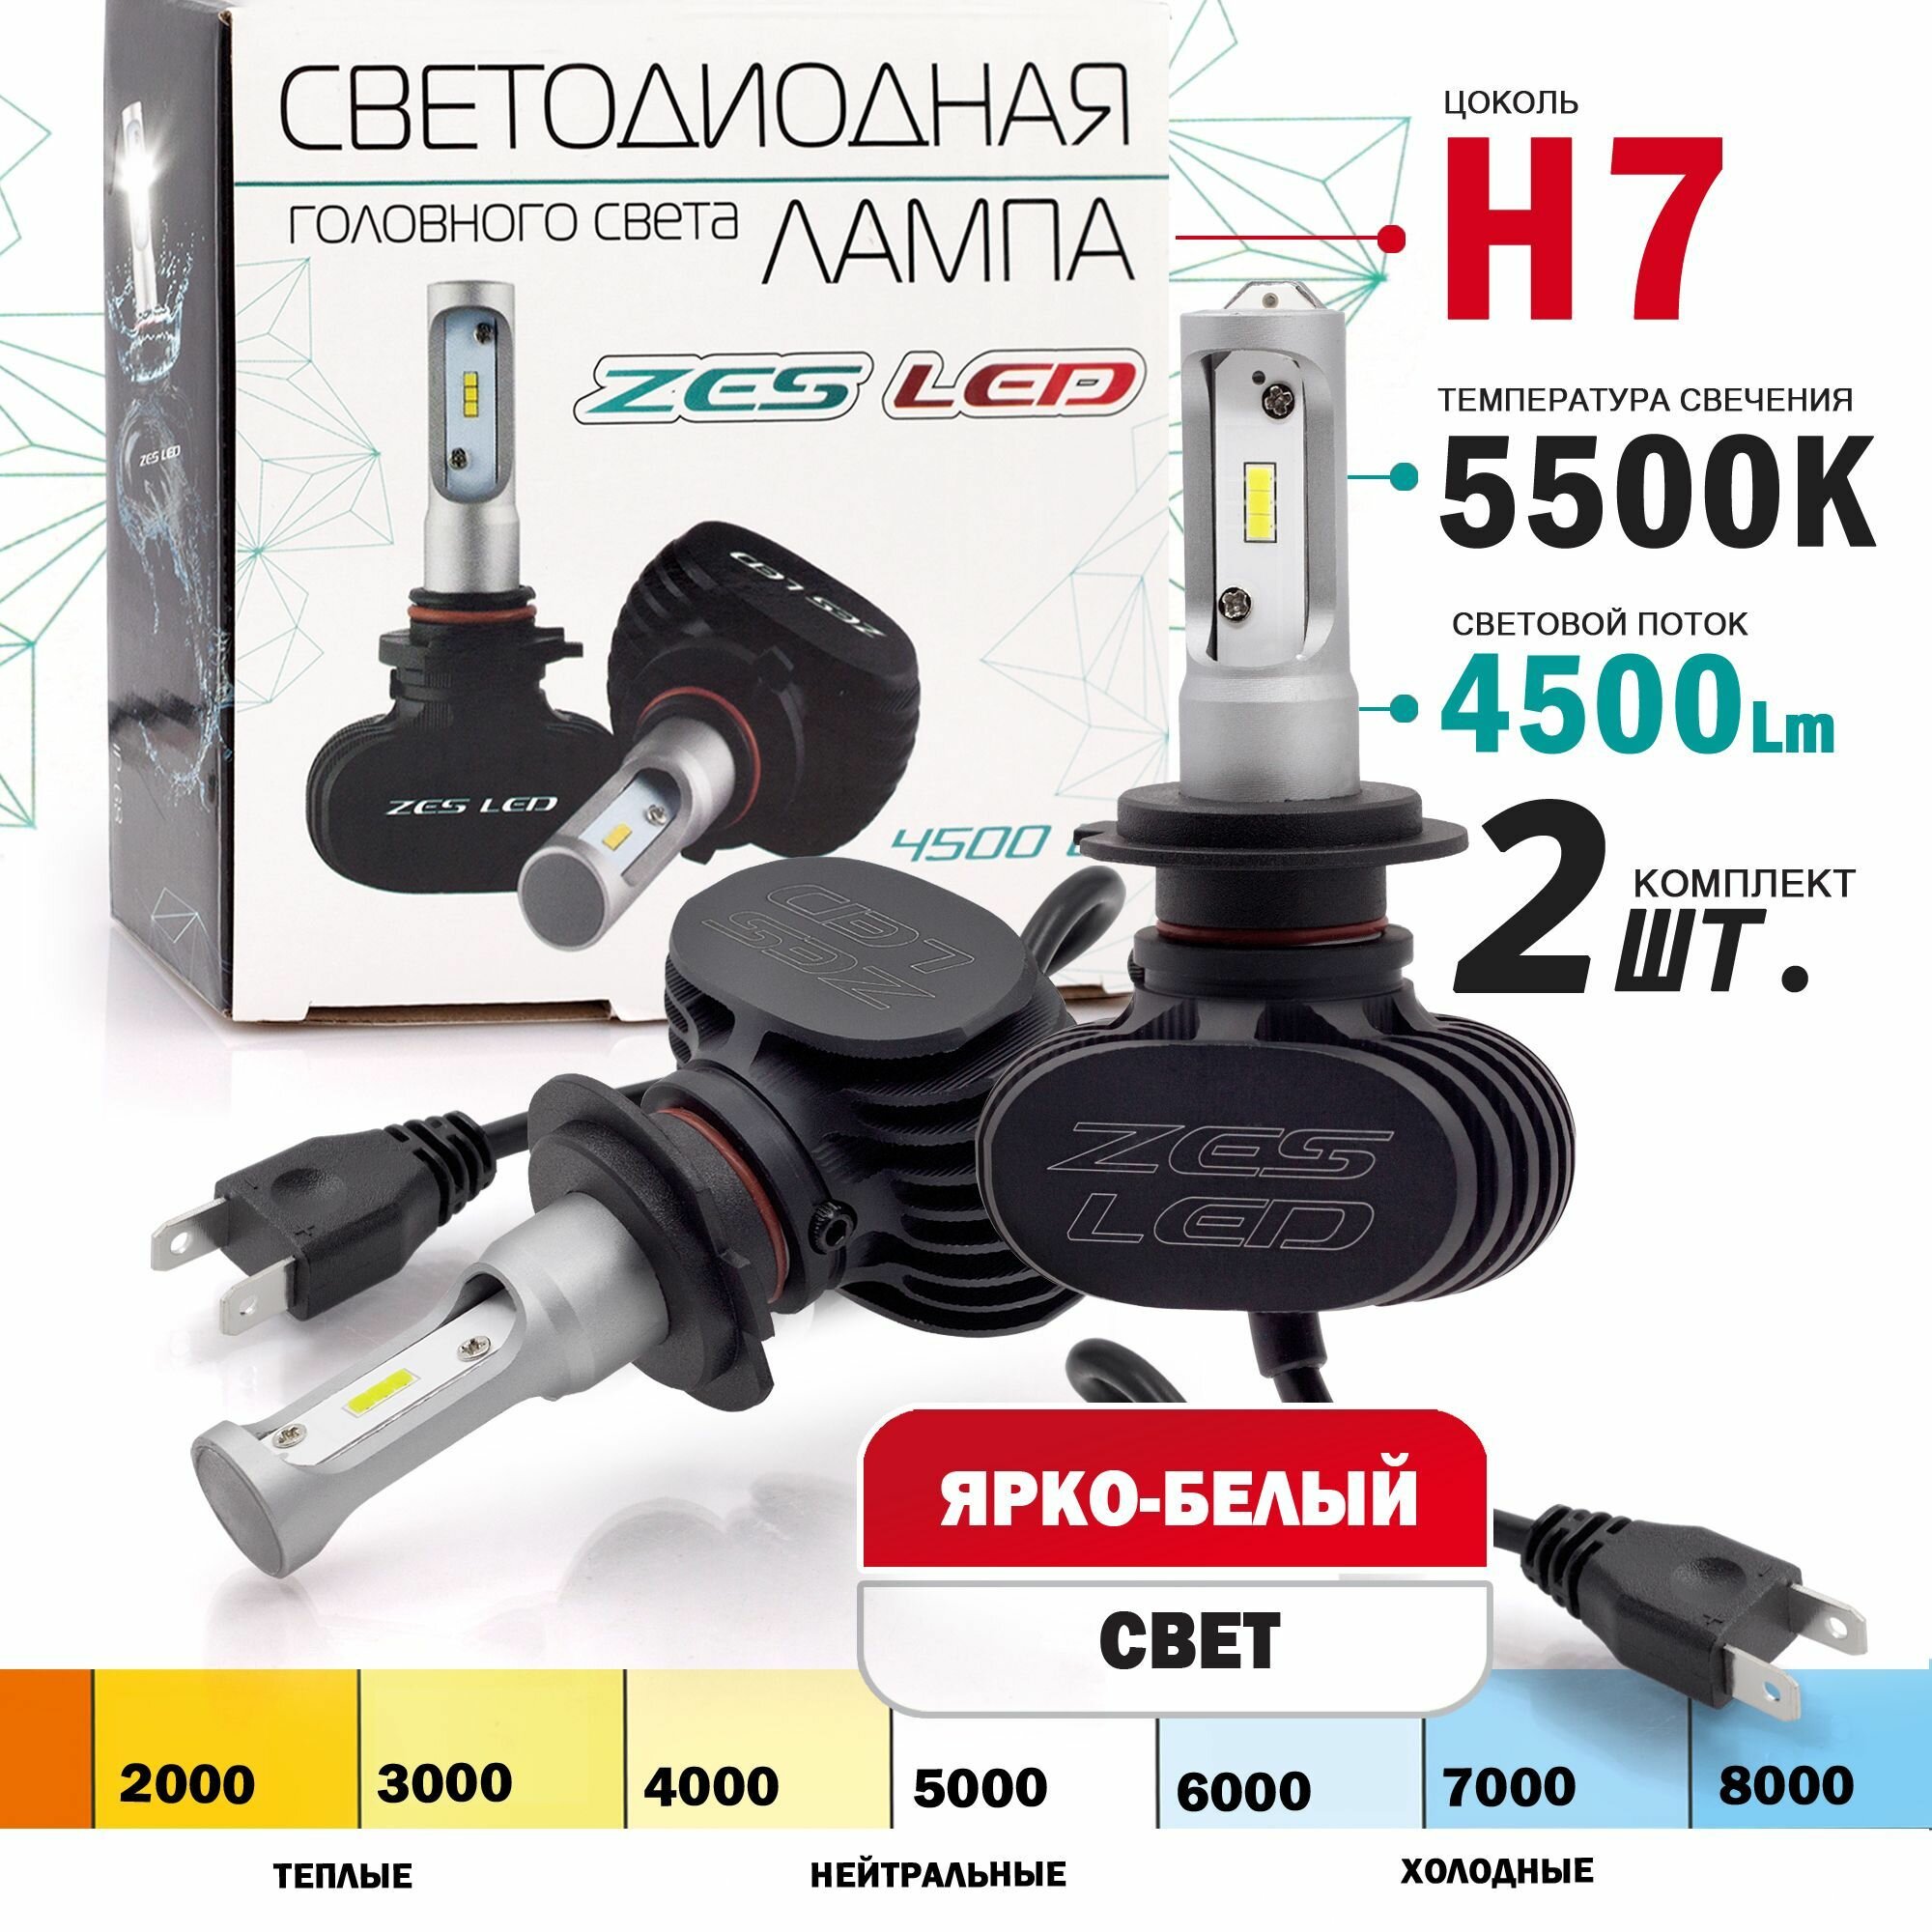 Светодиодные лампы ZES LED H7 5500K головной свет (радиатор) комплект 2 штуки